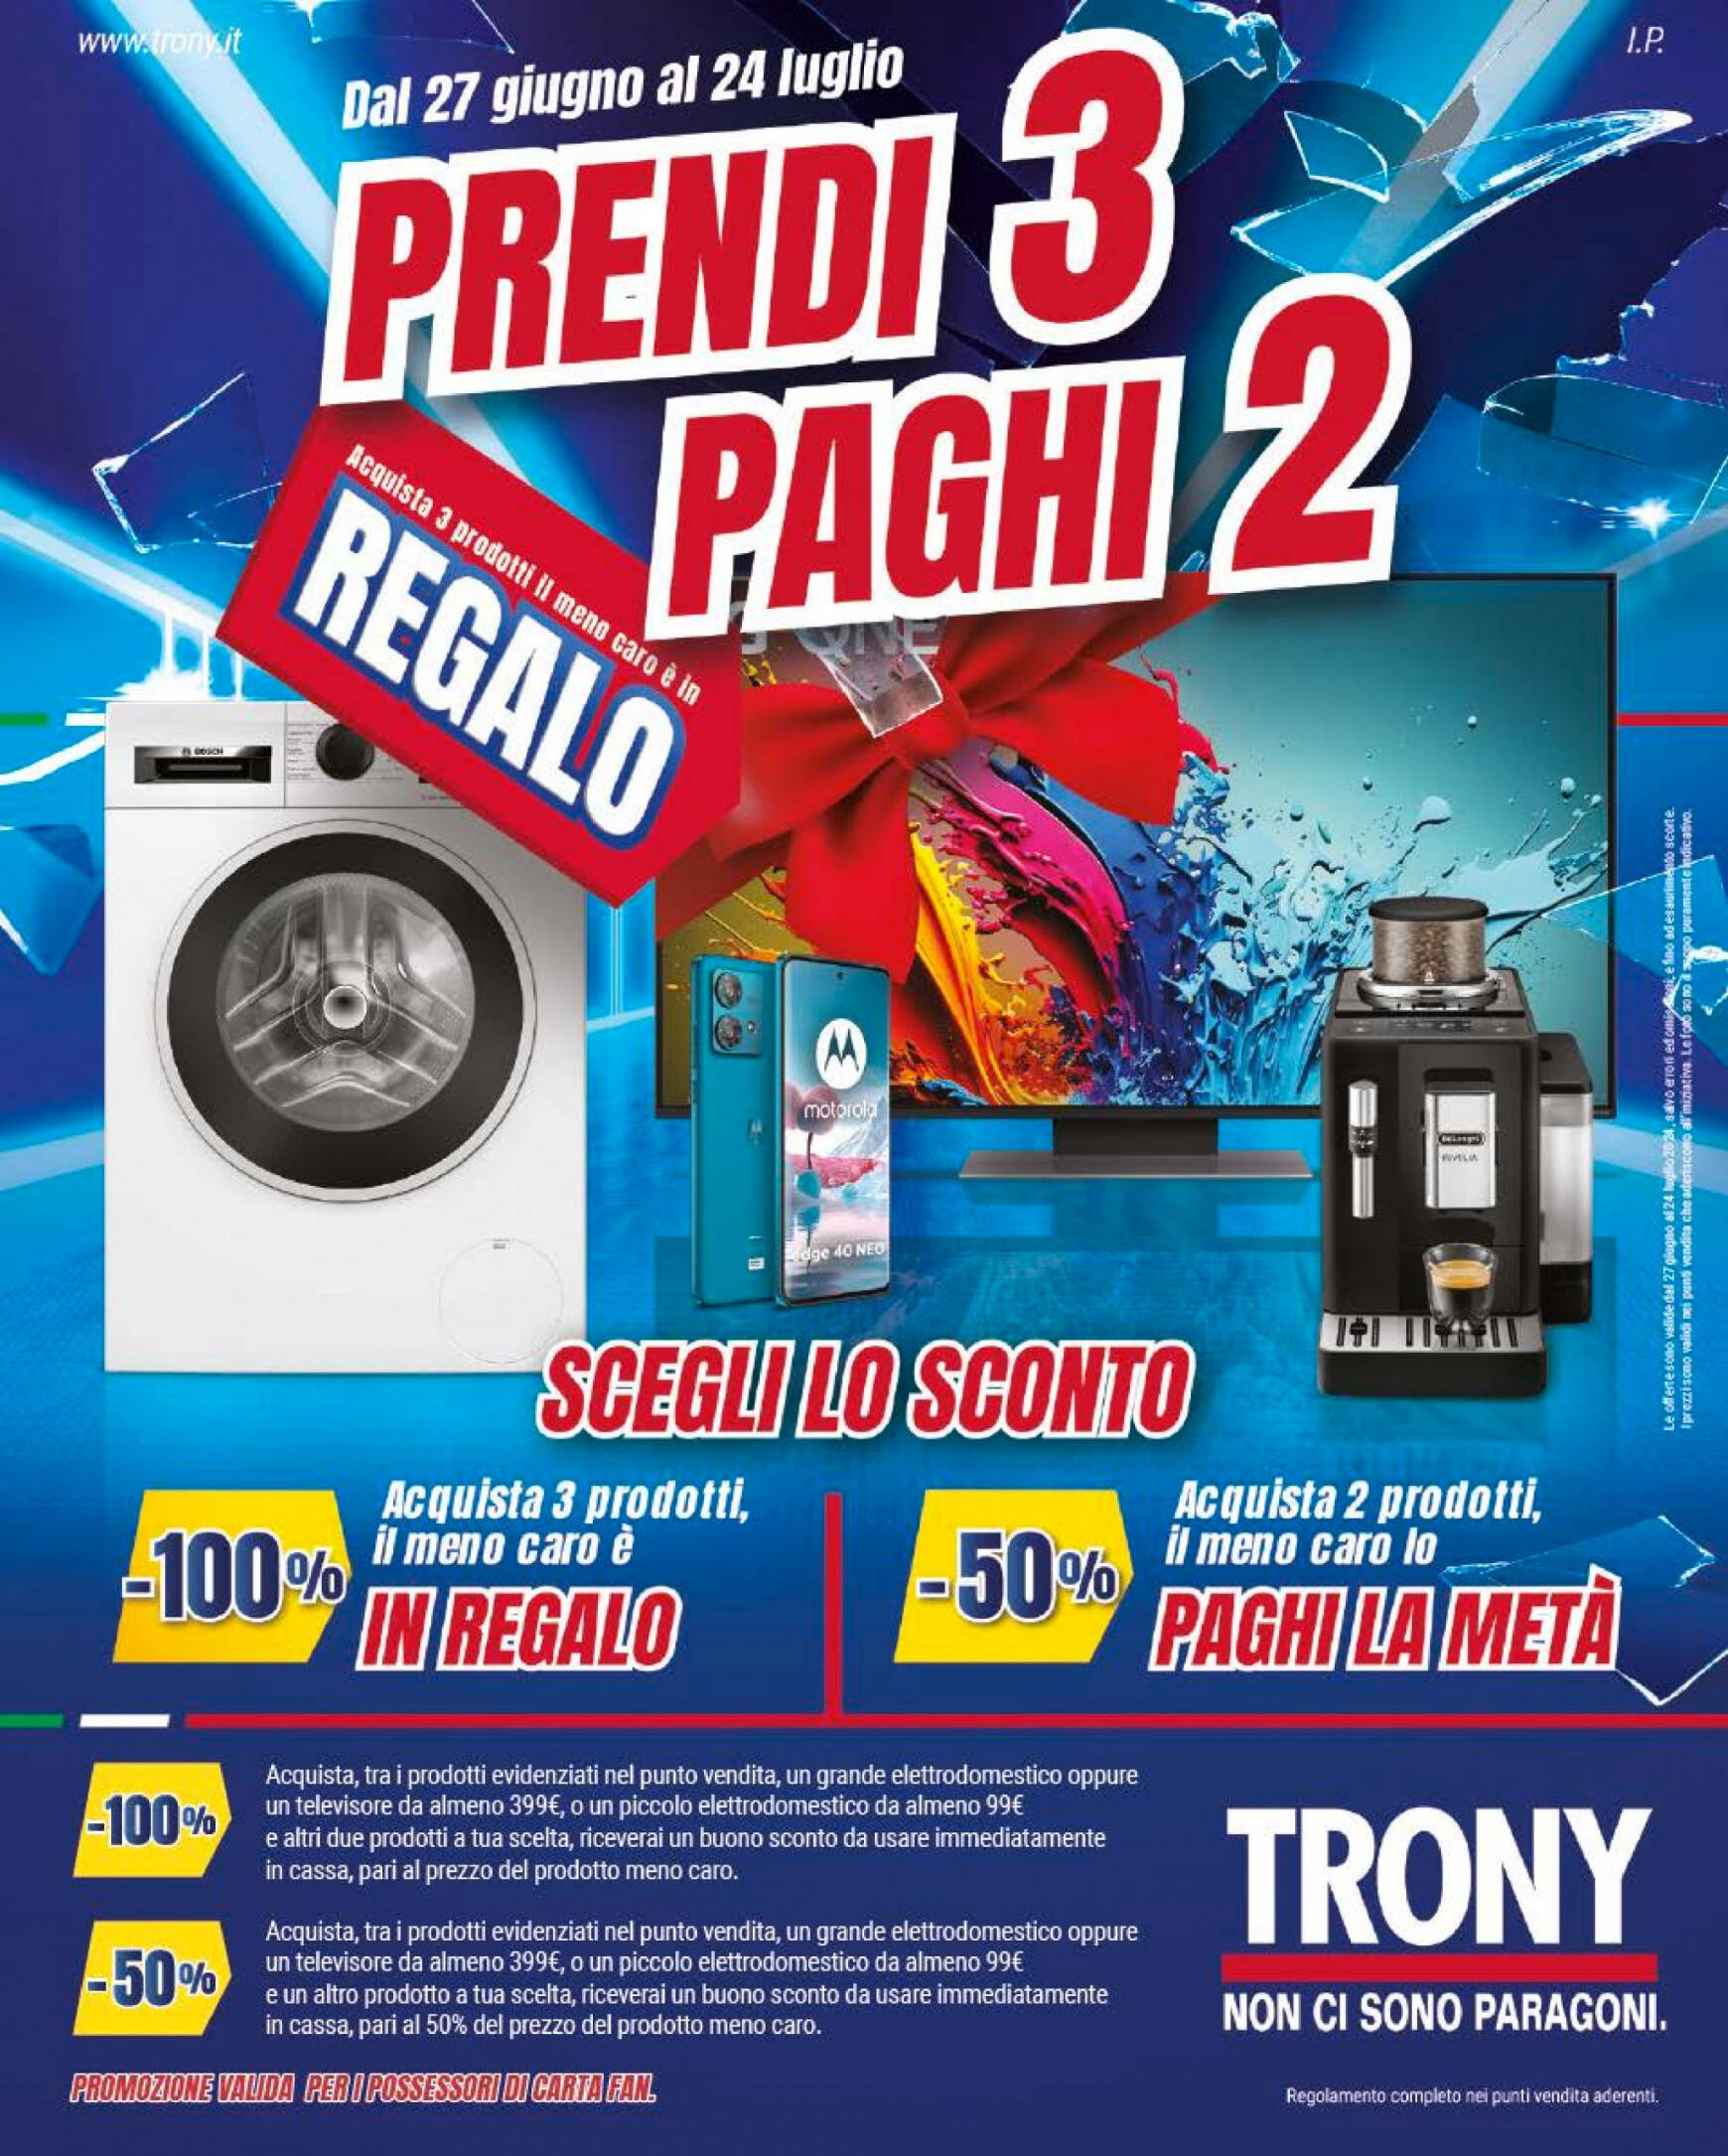 trony - Nuovo volantino Trony 27.06. - 24.07.